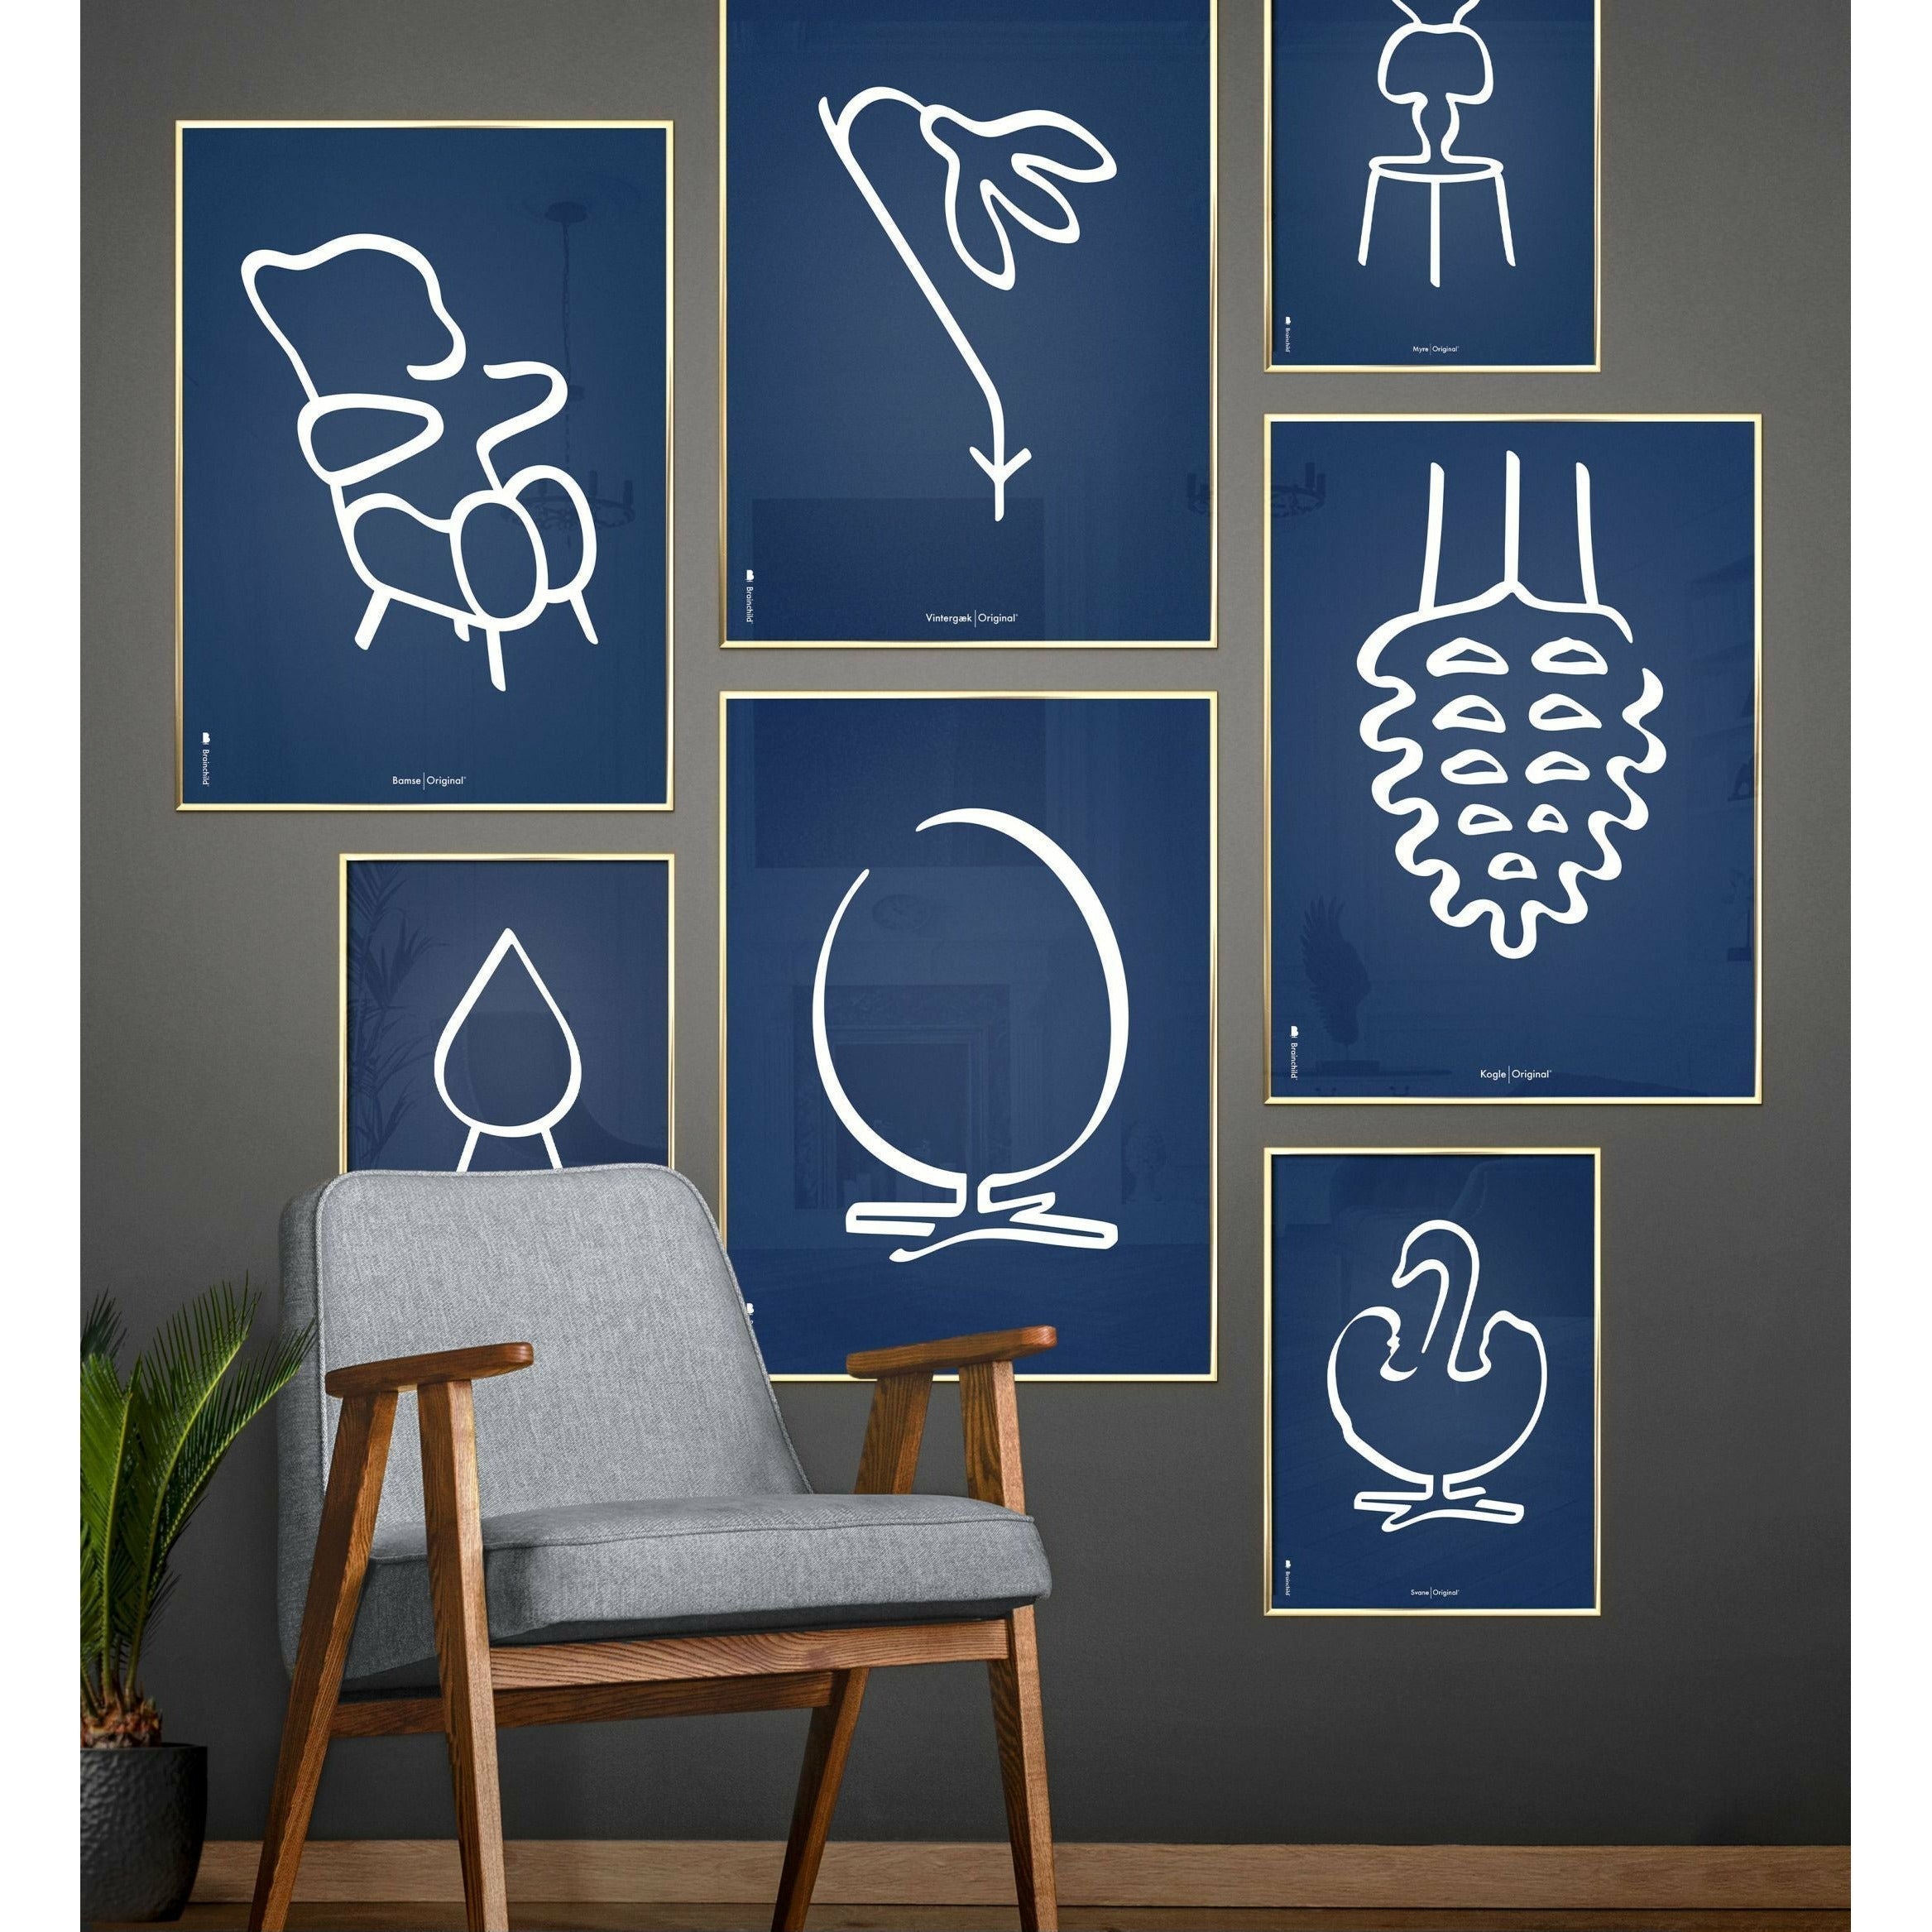 Pomysły plakat linii misy misy, rama wykonana z ciemnego drewna 50x70 cm, niebieskie tło